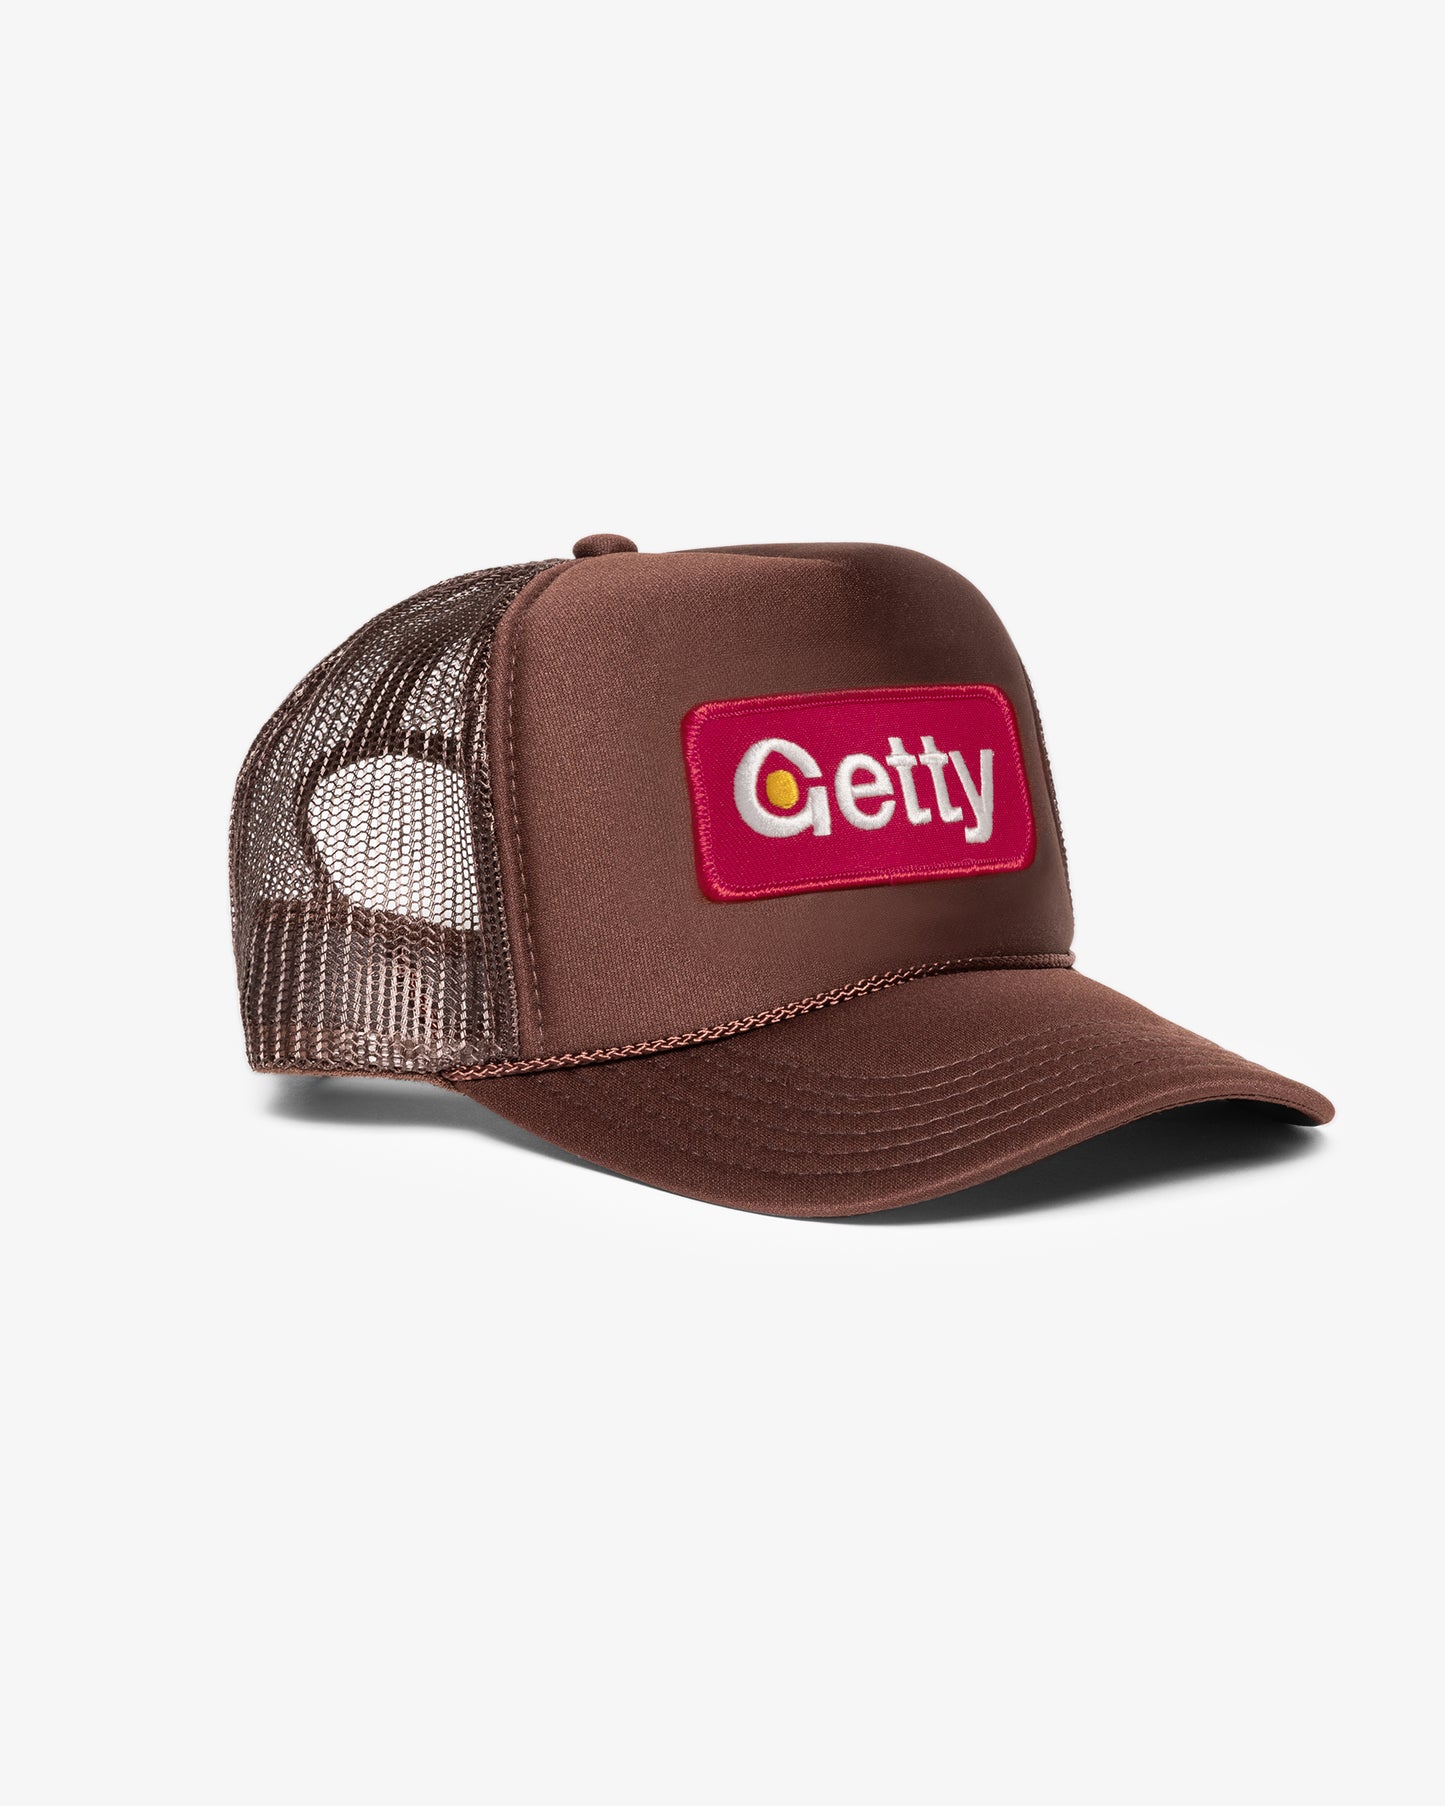 Getty Trucker Hat